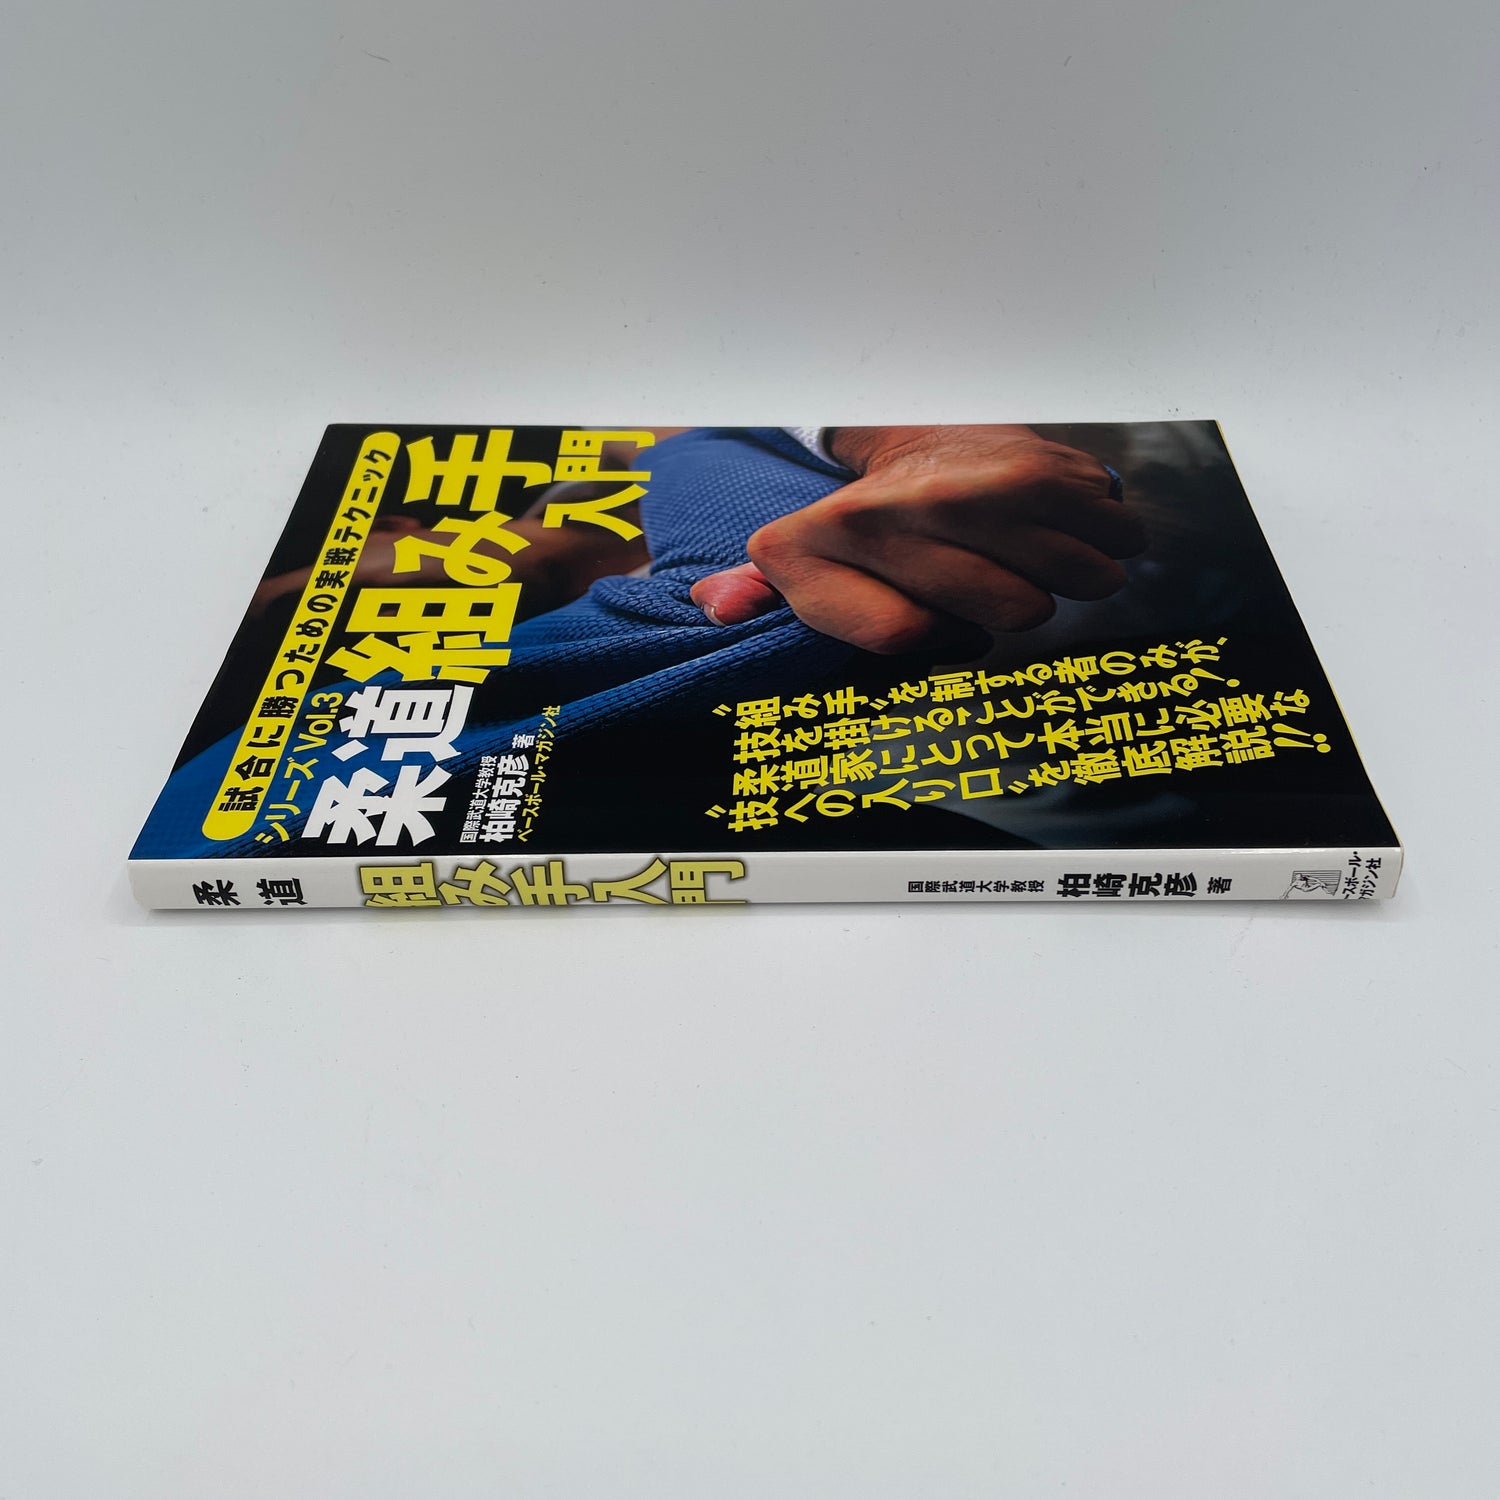 Libro 3 de la serie de competencia de judo: Introducción al libro apasionante de Katsuhiko Kashiwazaki (usado)